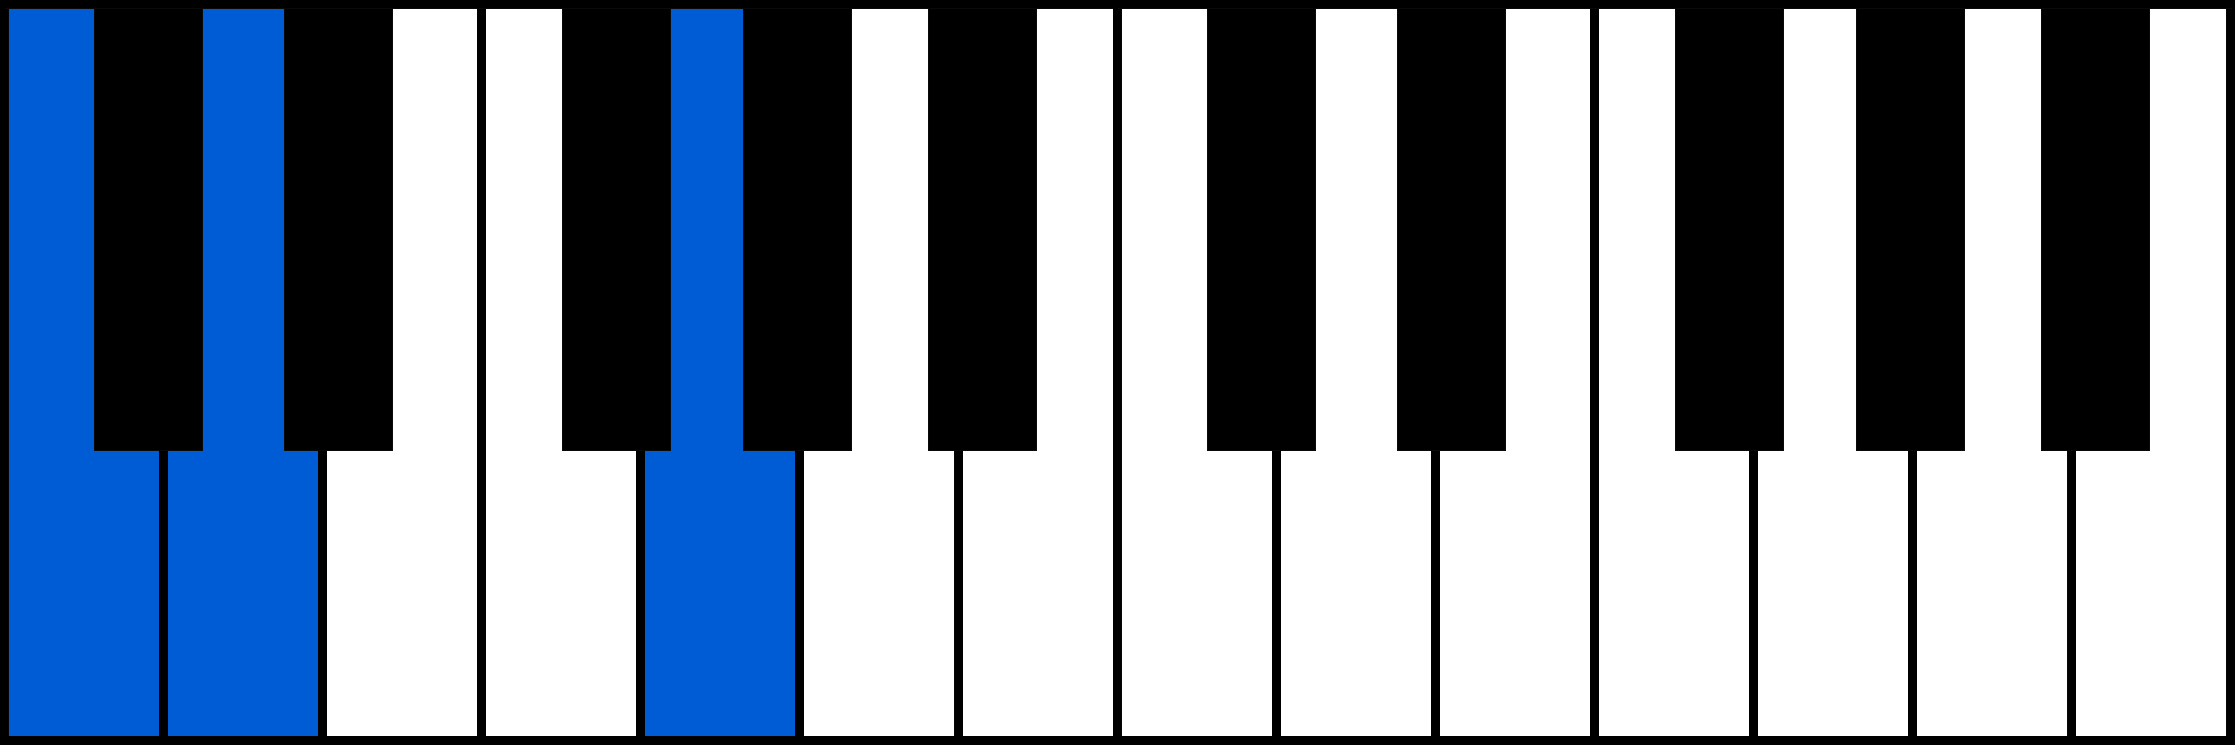 Csus2 piano chord